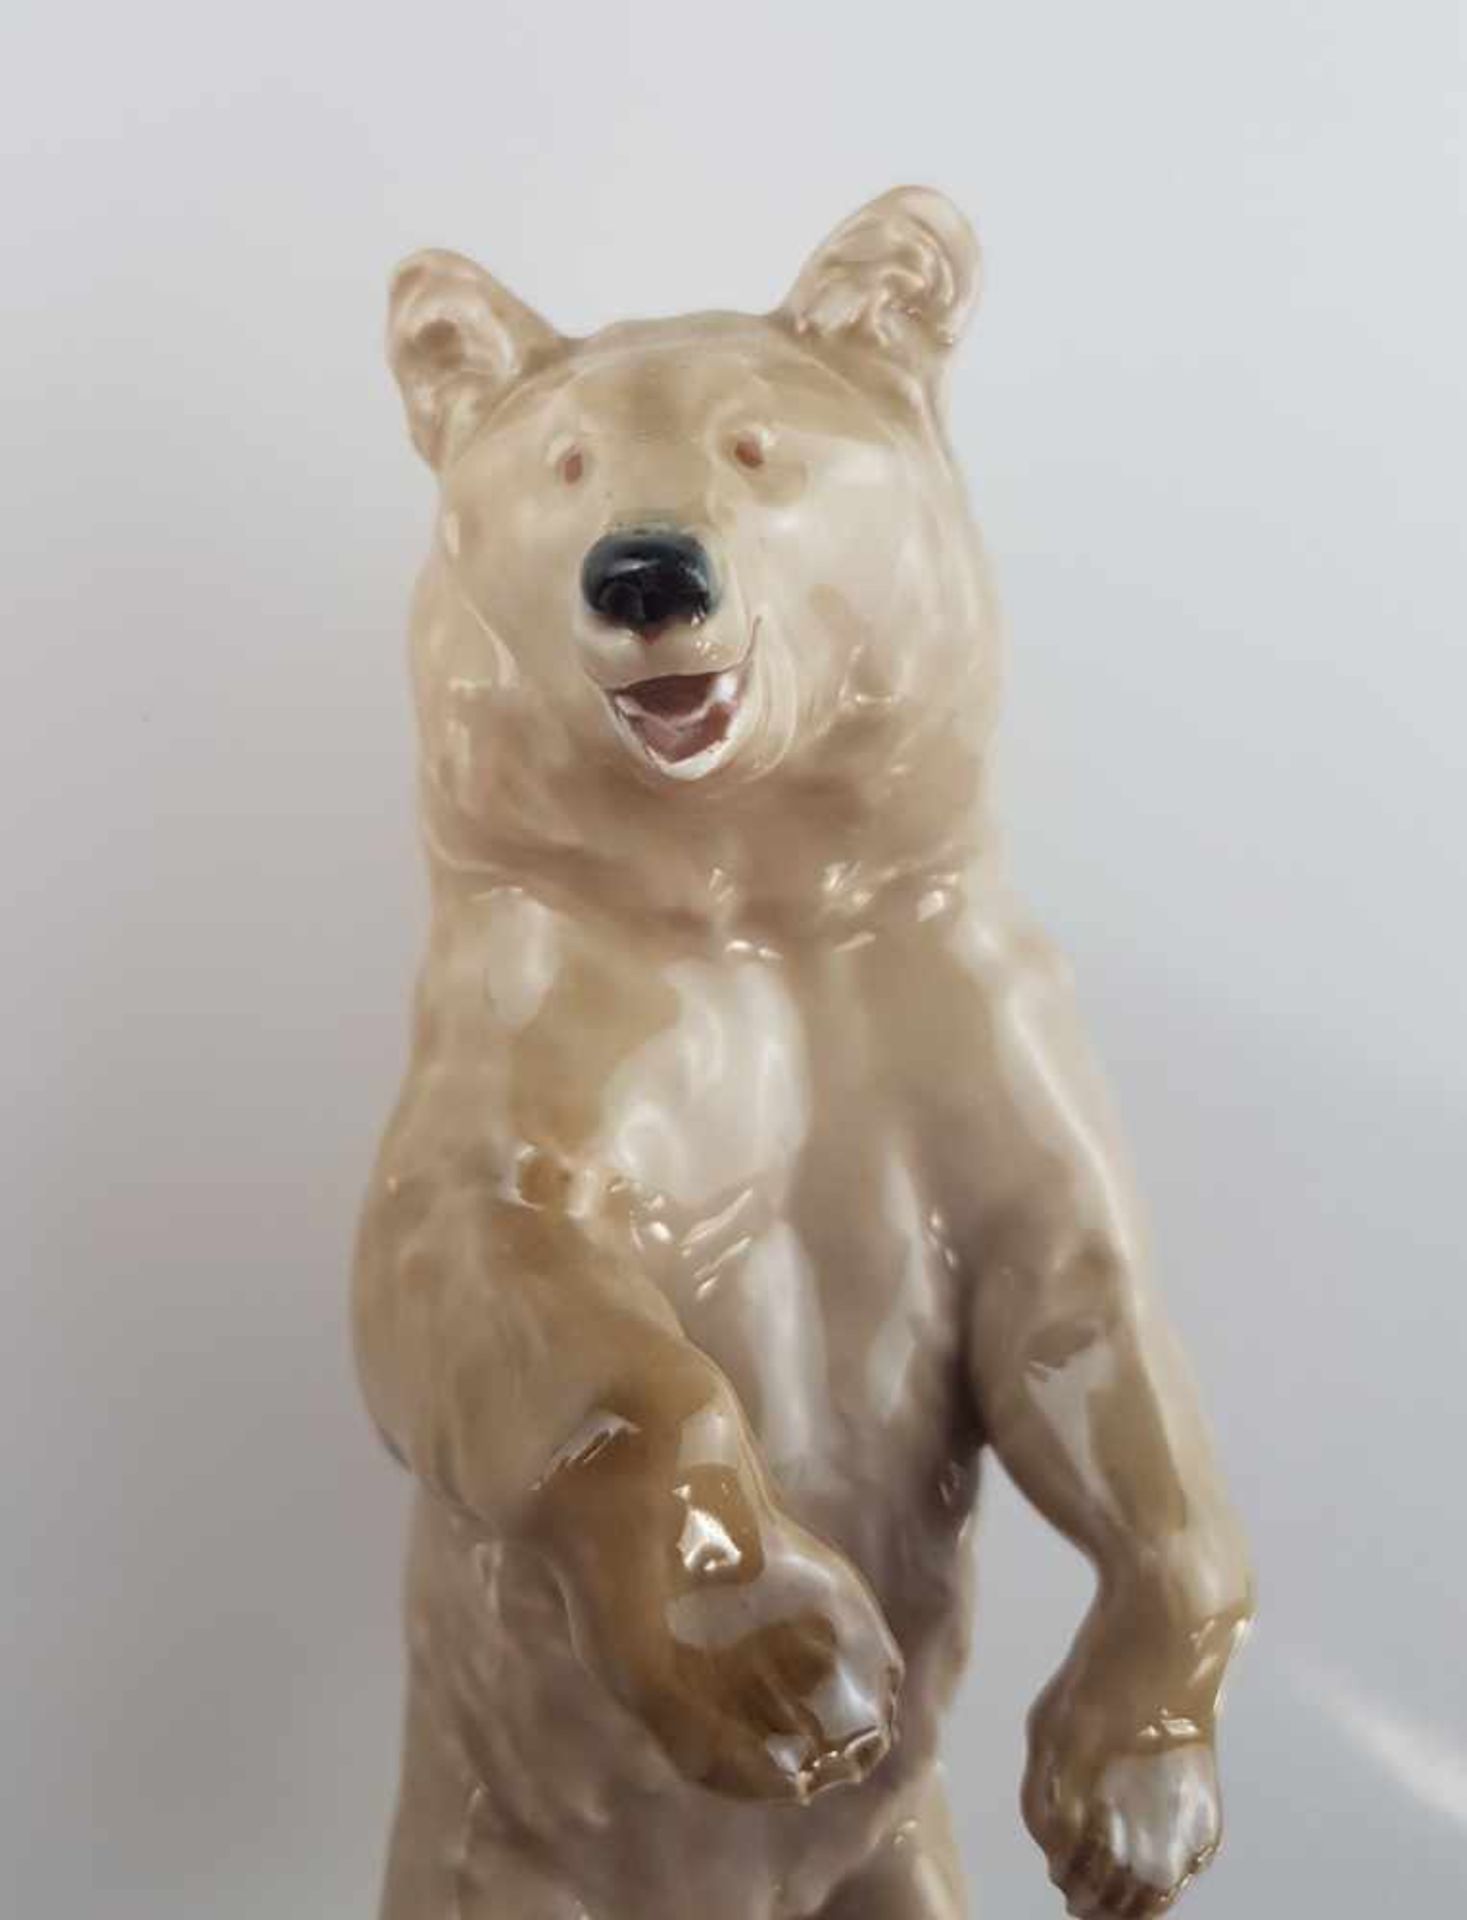 Porzellanfigur "Bär, aufrecht stehend" - Meissen Schwertermarke, Pfeiferzeit 1924-1934, Entwurf ( - Bild 2 aus 8